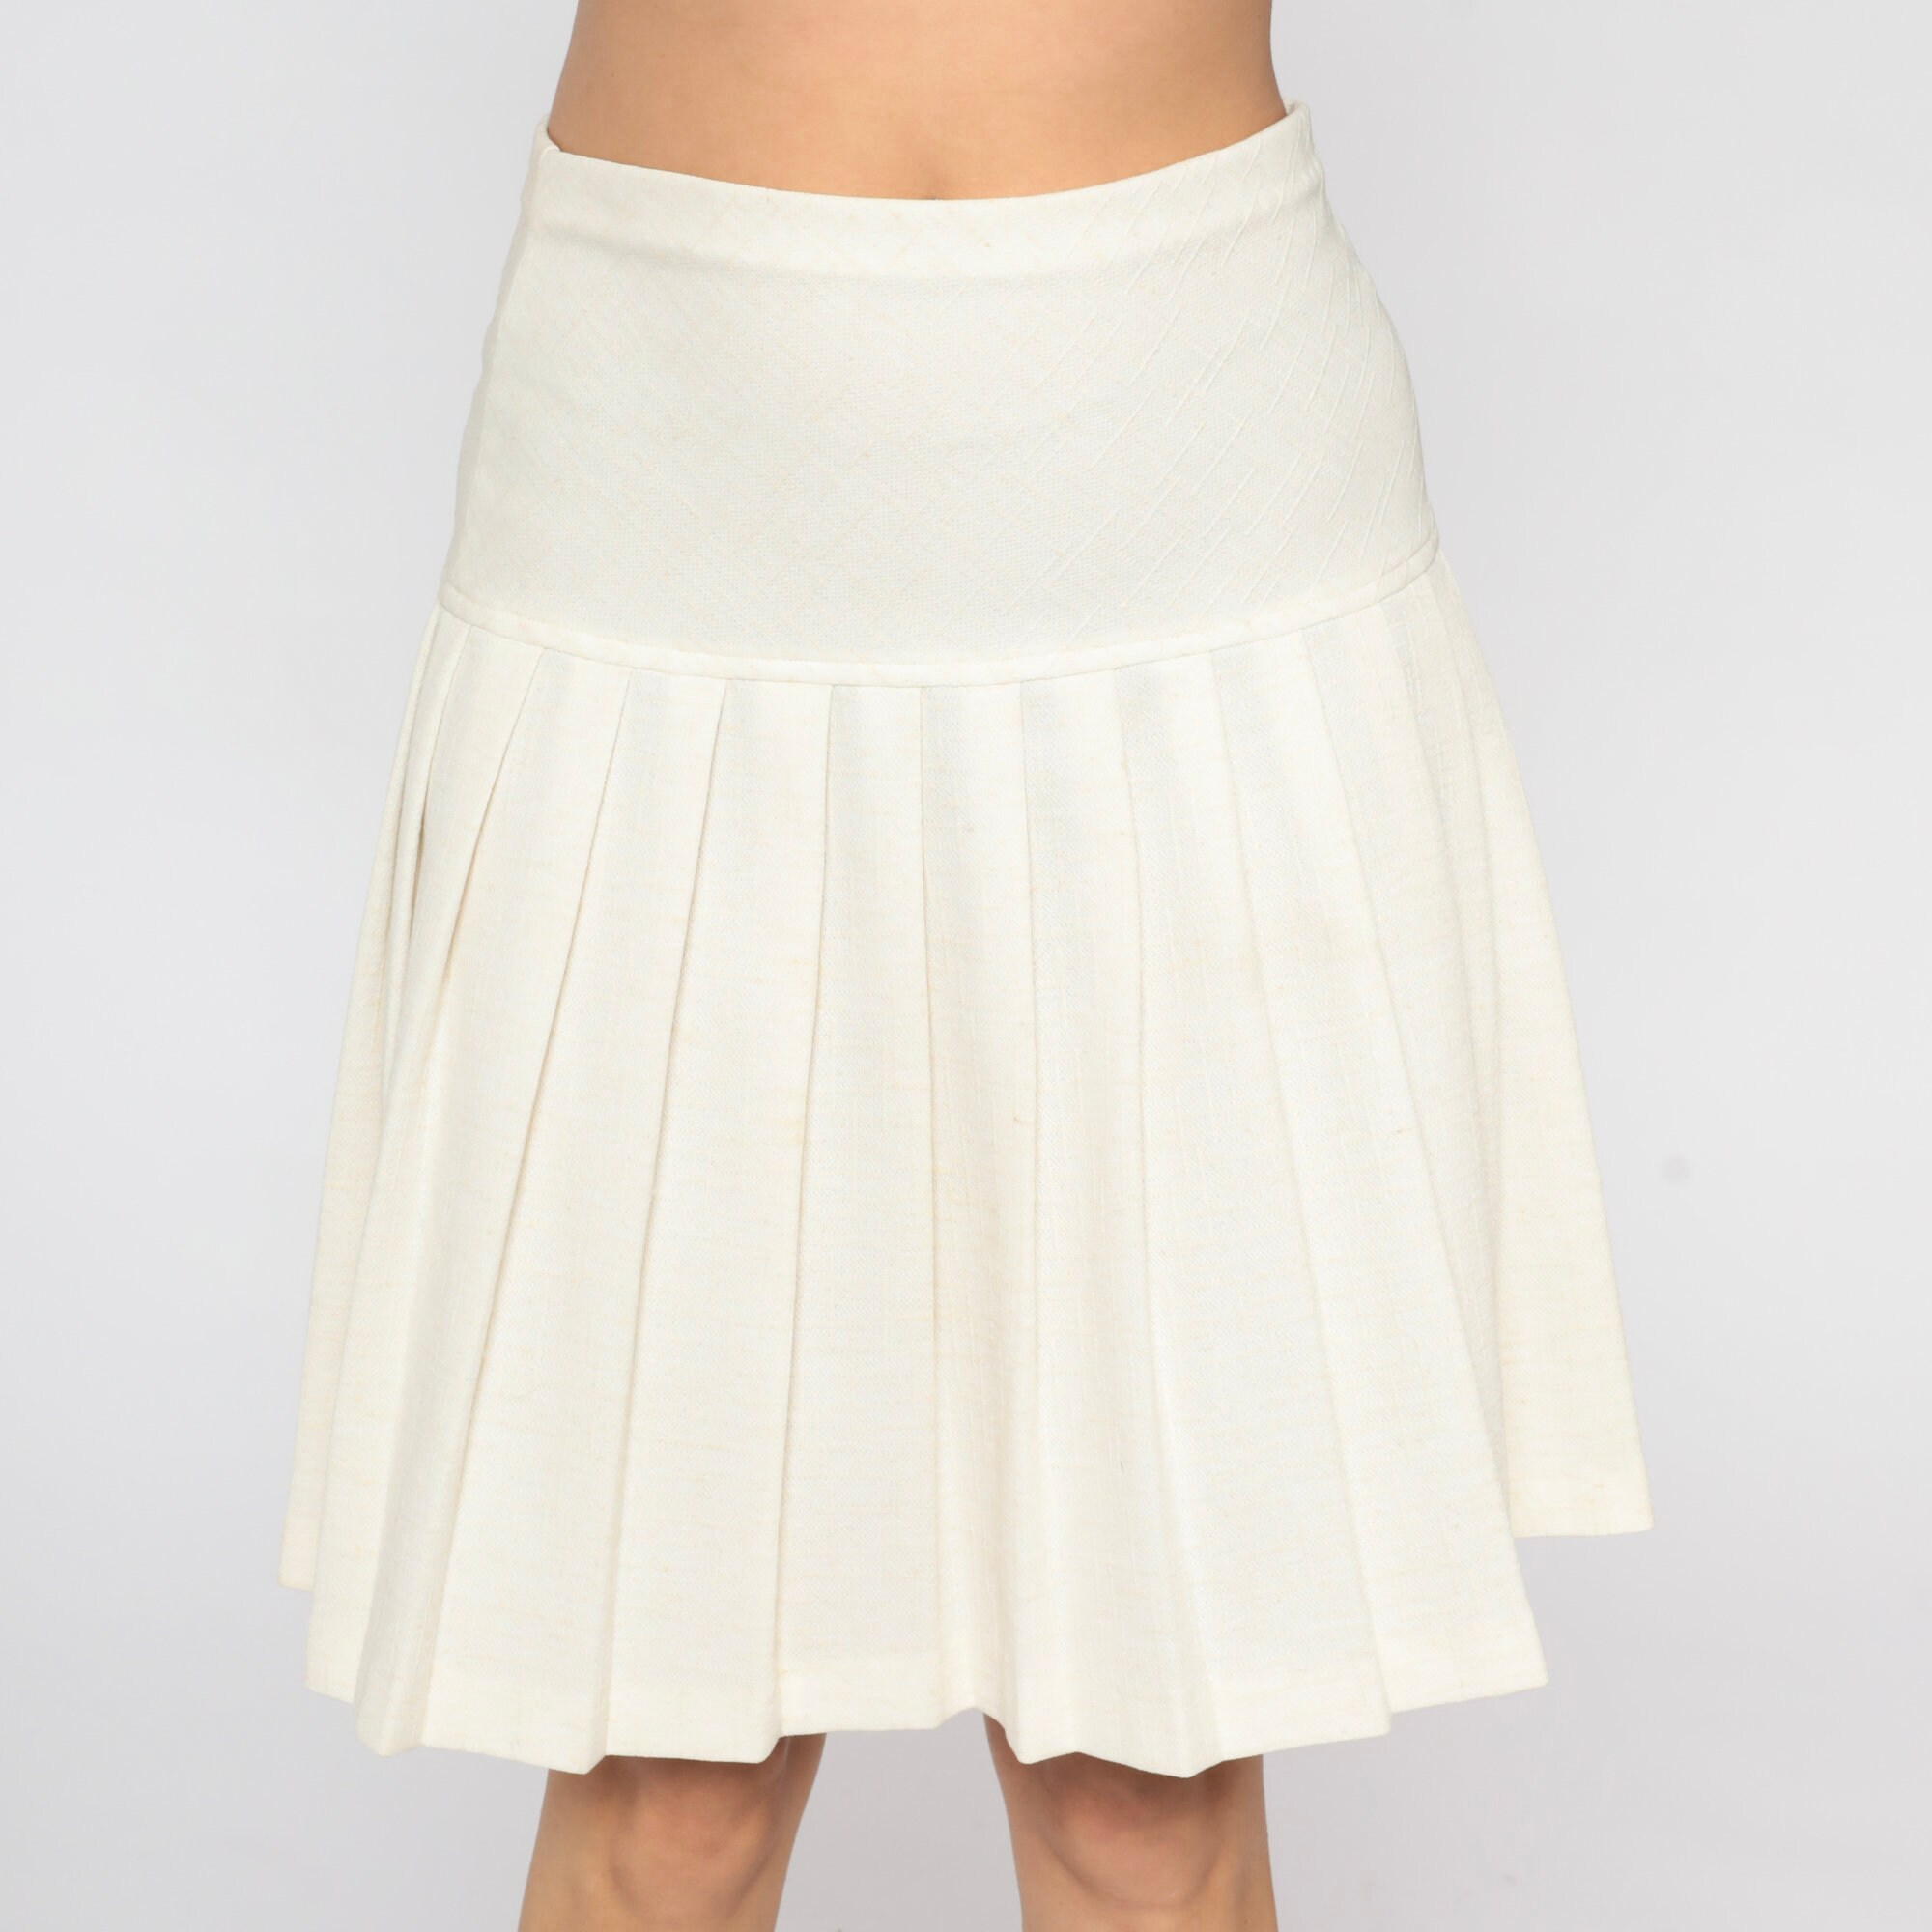 Pleated Mini Skirt 70s Tennis Skirt Off-white High Waist - Etsy